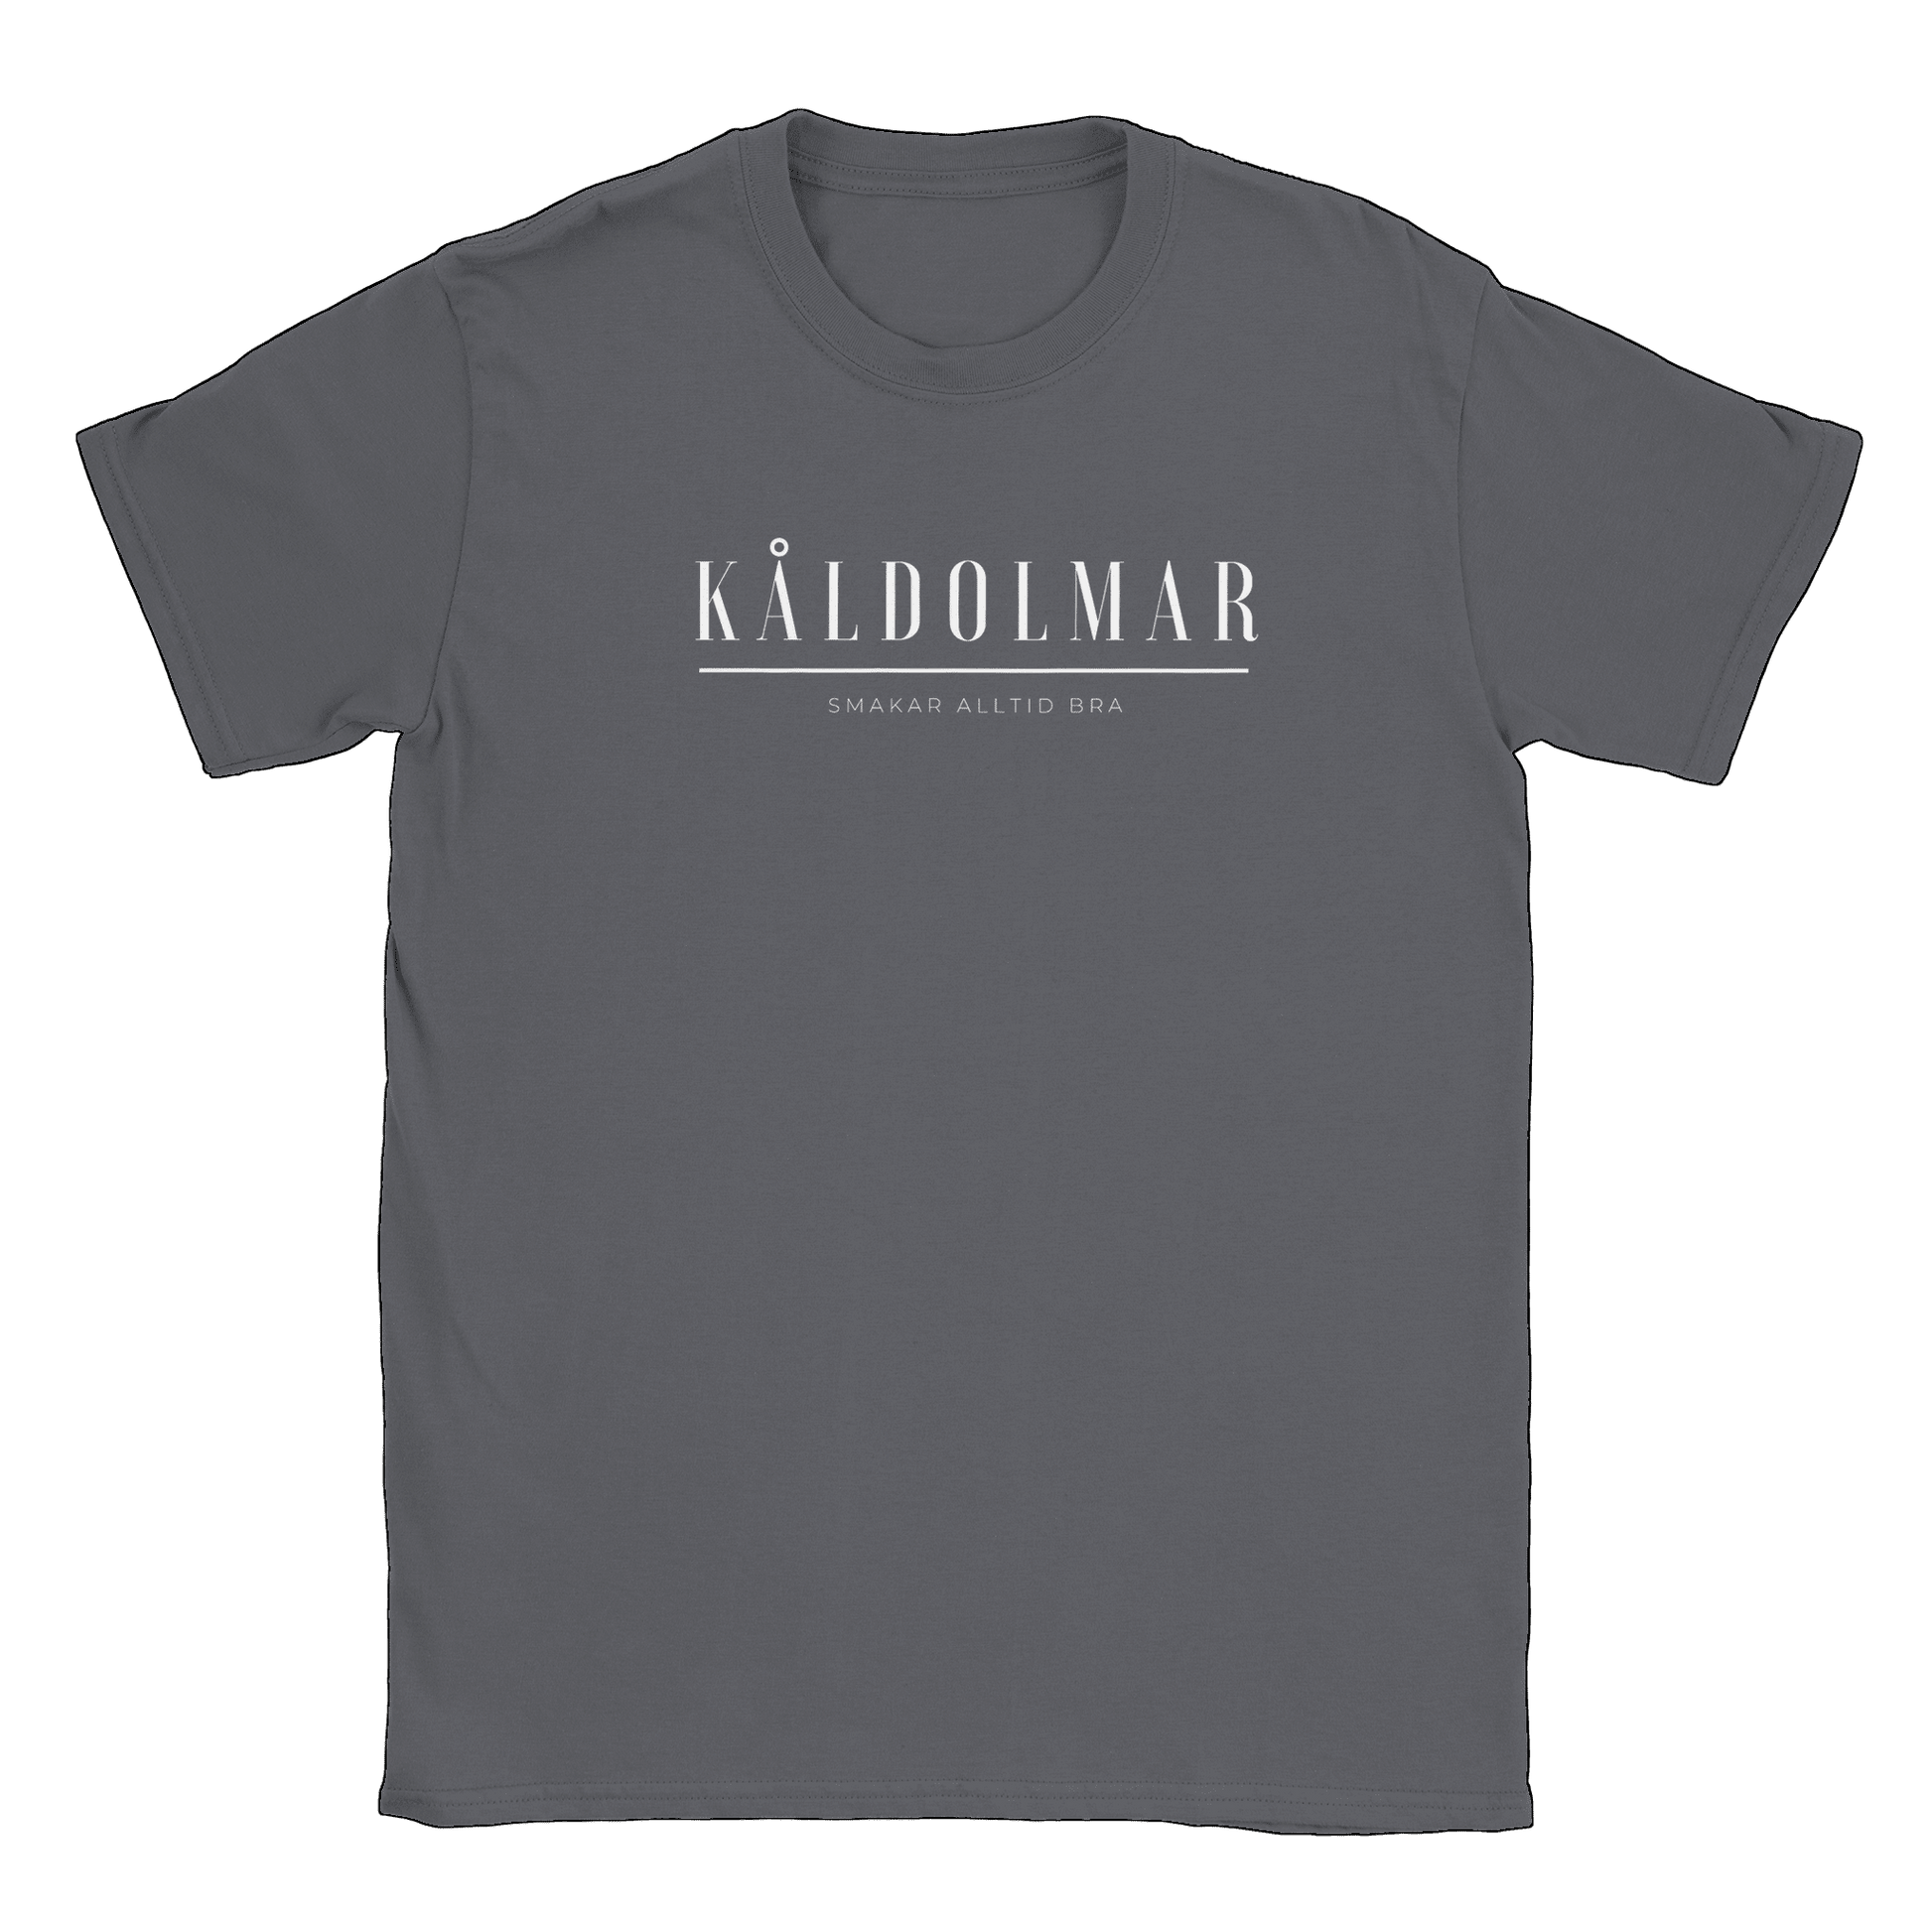 Kåldolmar - T-shirt Charcoal